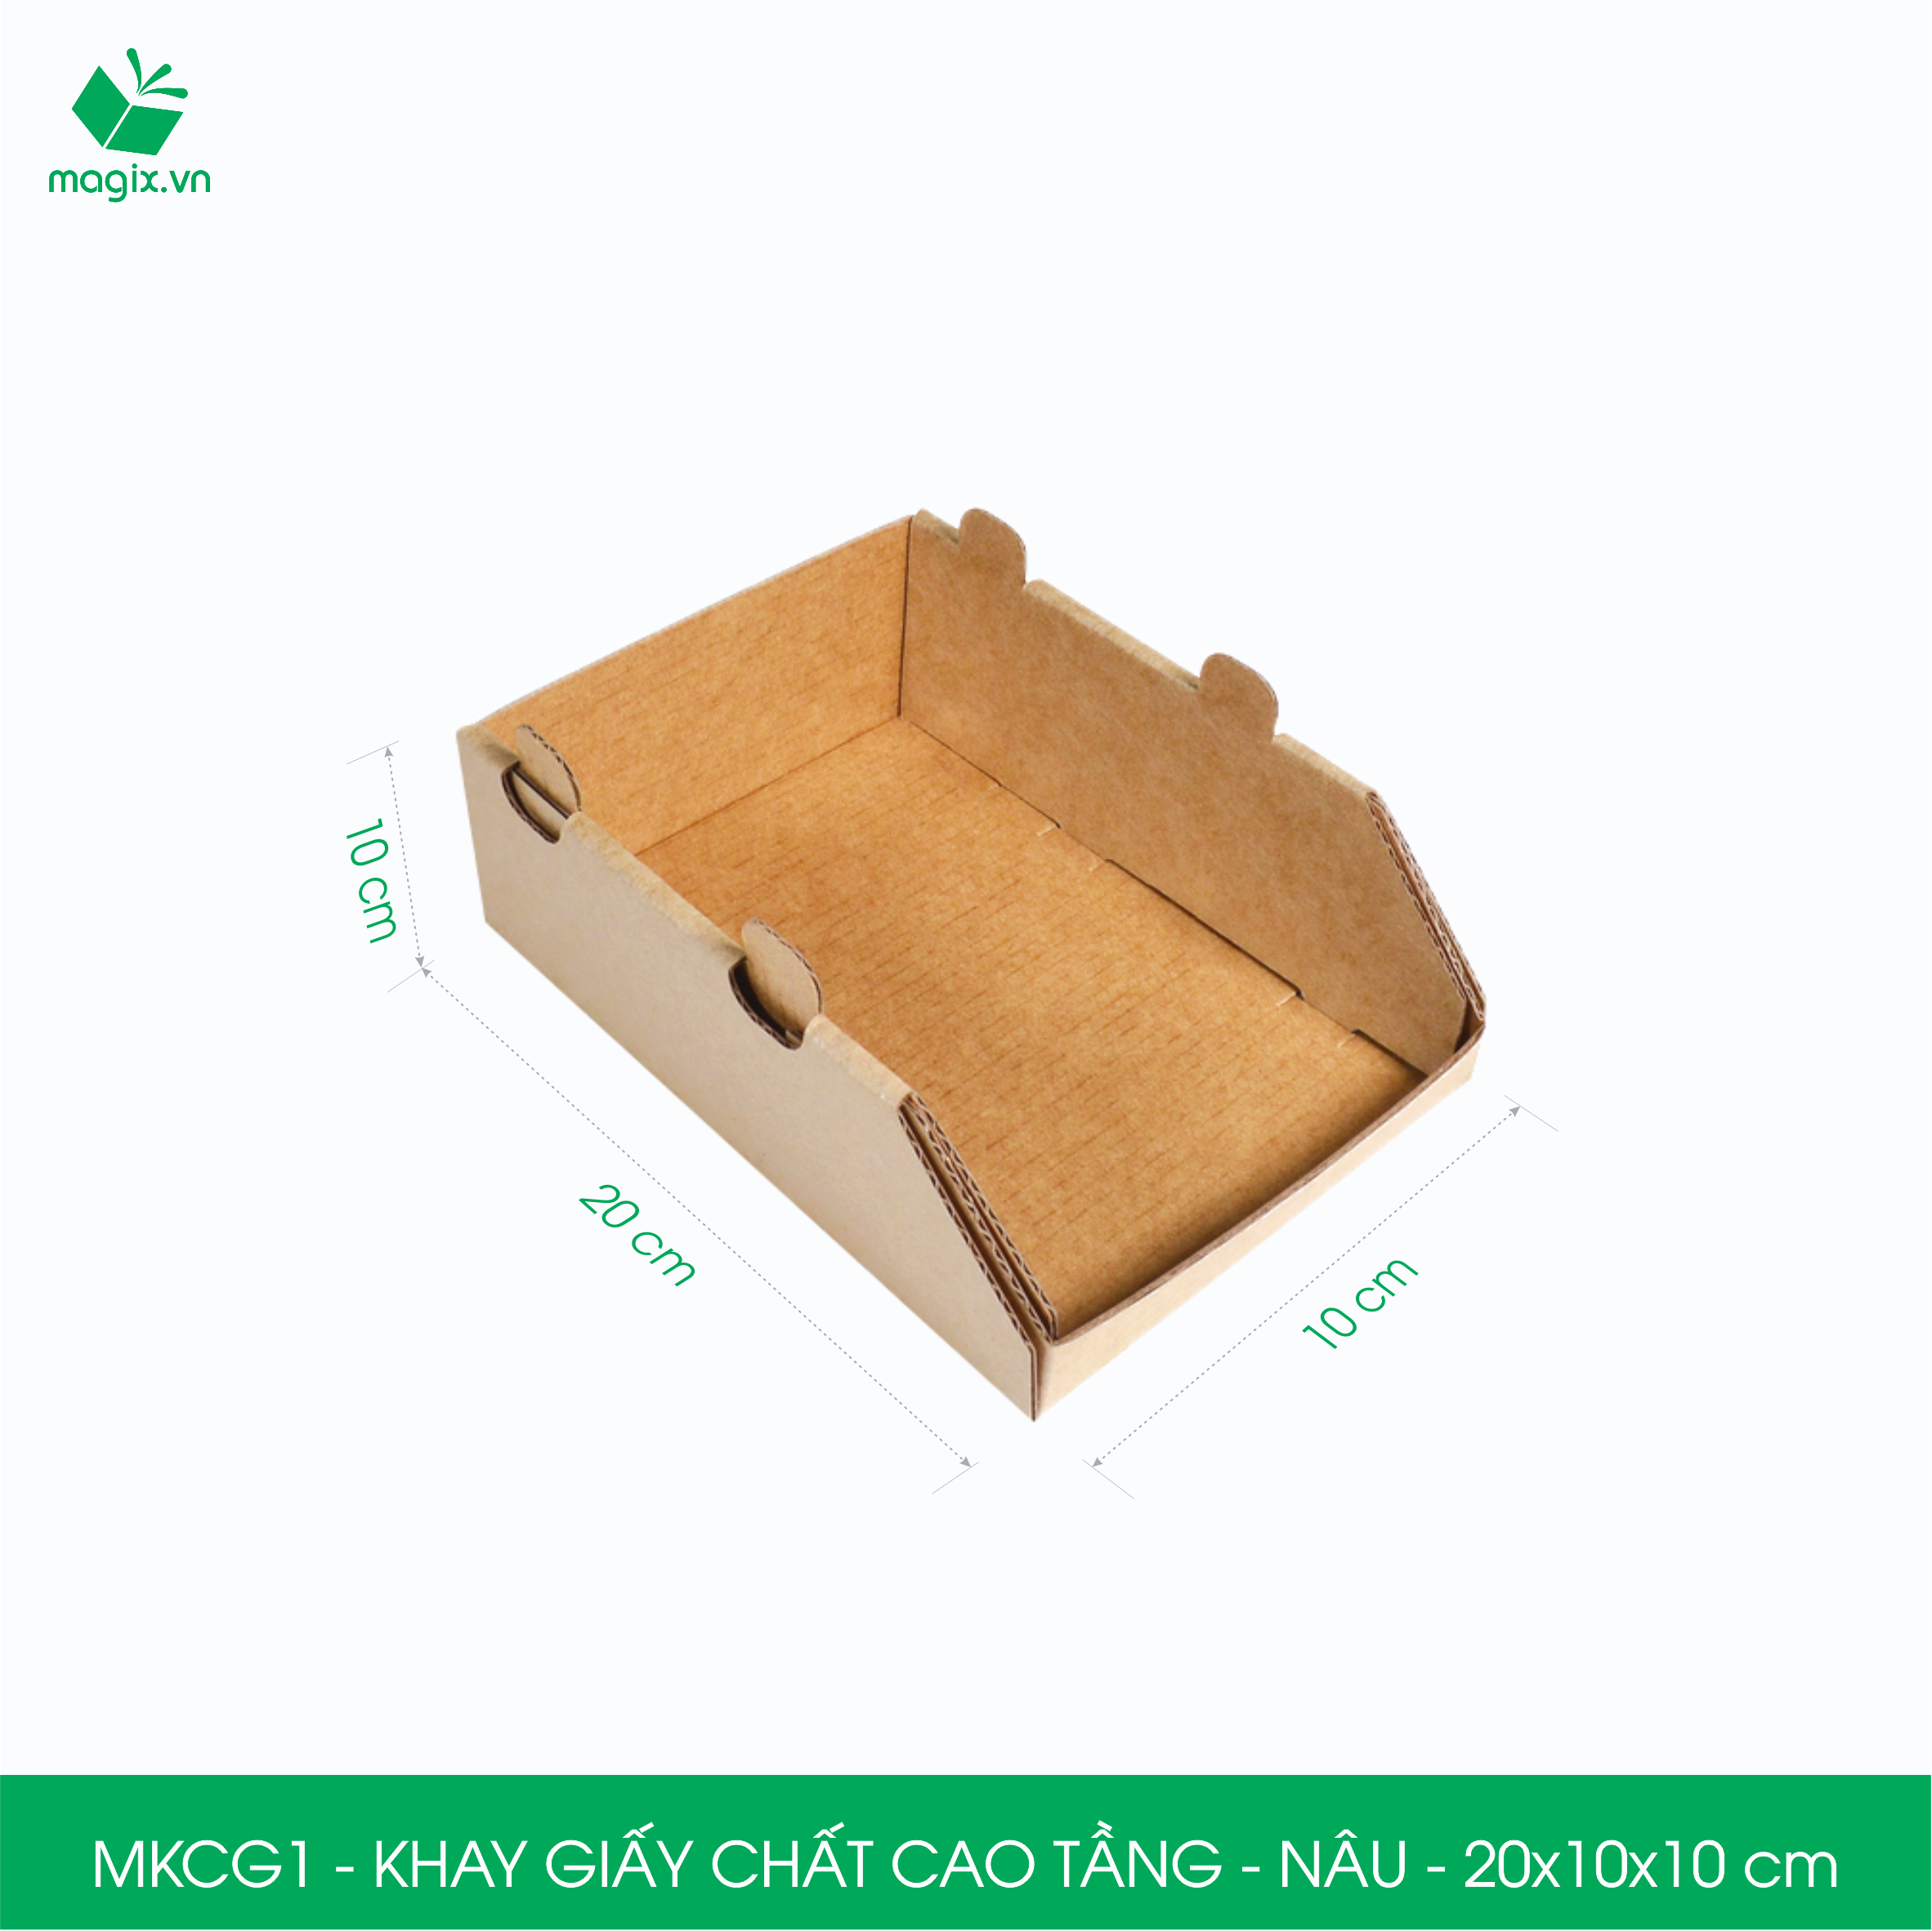 MKCG - 5 Khay giấy chất cao tầng bằng giấy carton siêu cứng, kệ giấy đựng đồ văn phòng, khay đựng dụng cụ, khay linh kiện, kệ phân loại dụng cụ - Nhiều kích thước